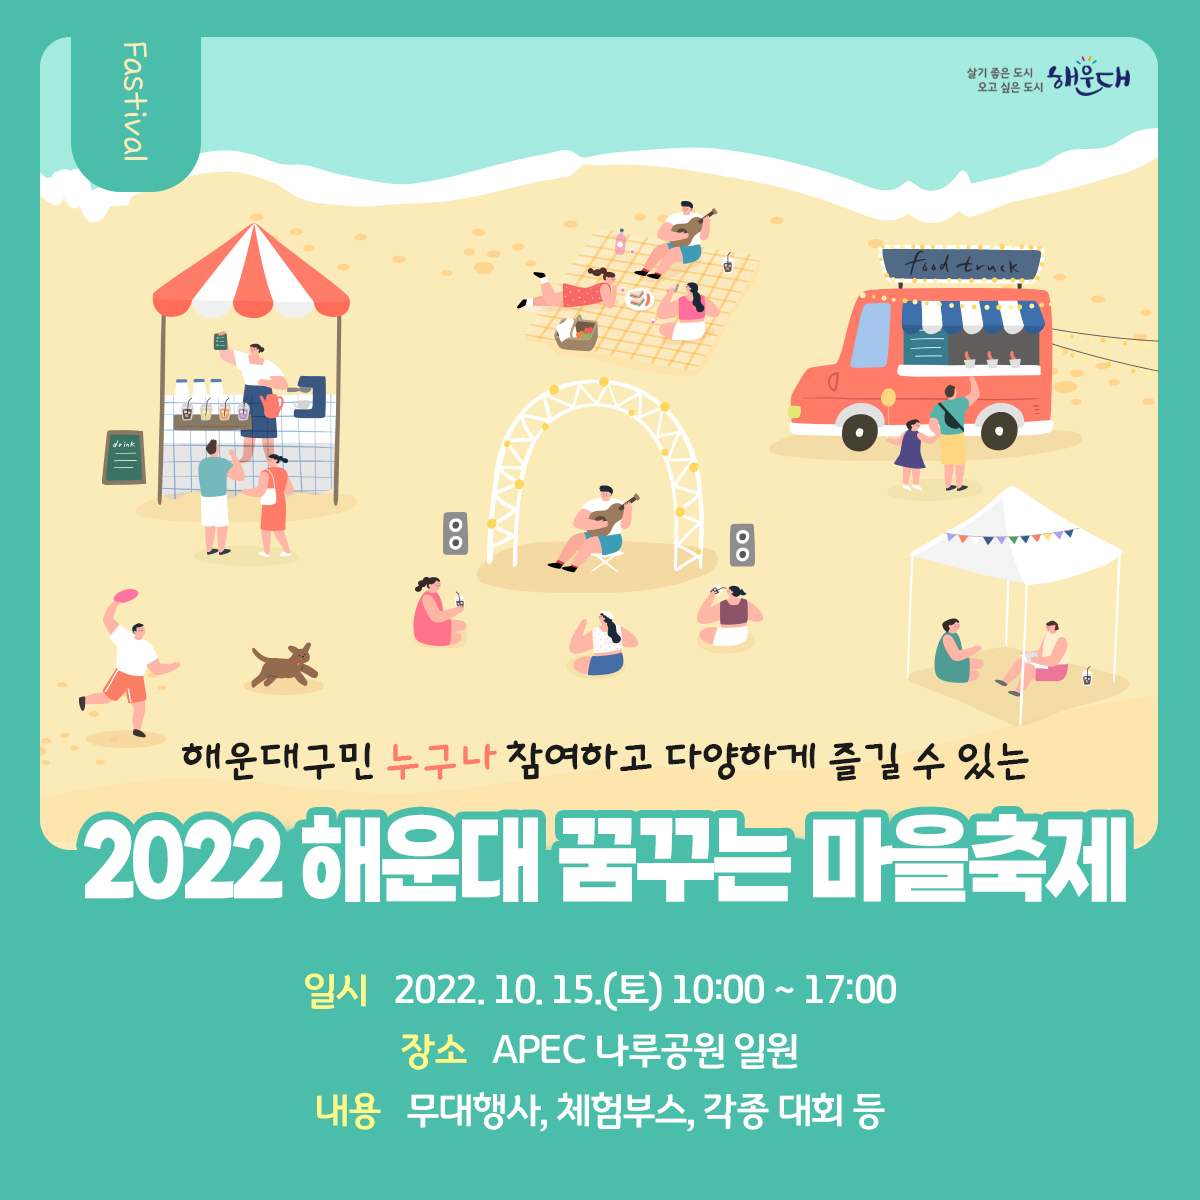 2022년 해운대 꿈꾸는 마을축제